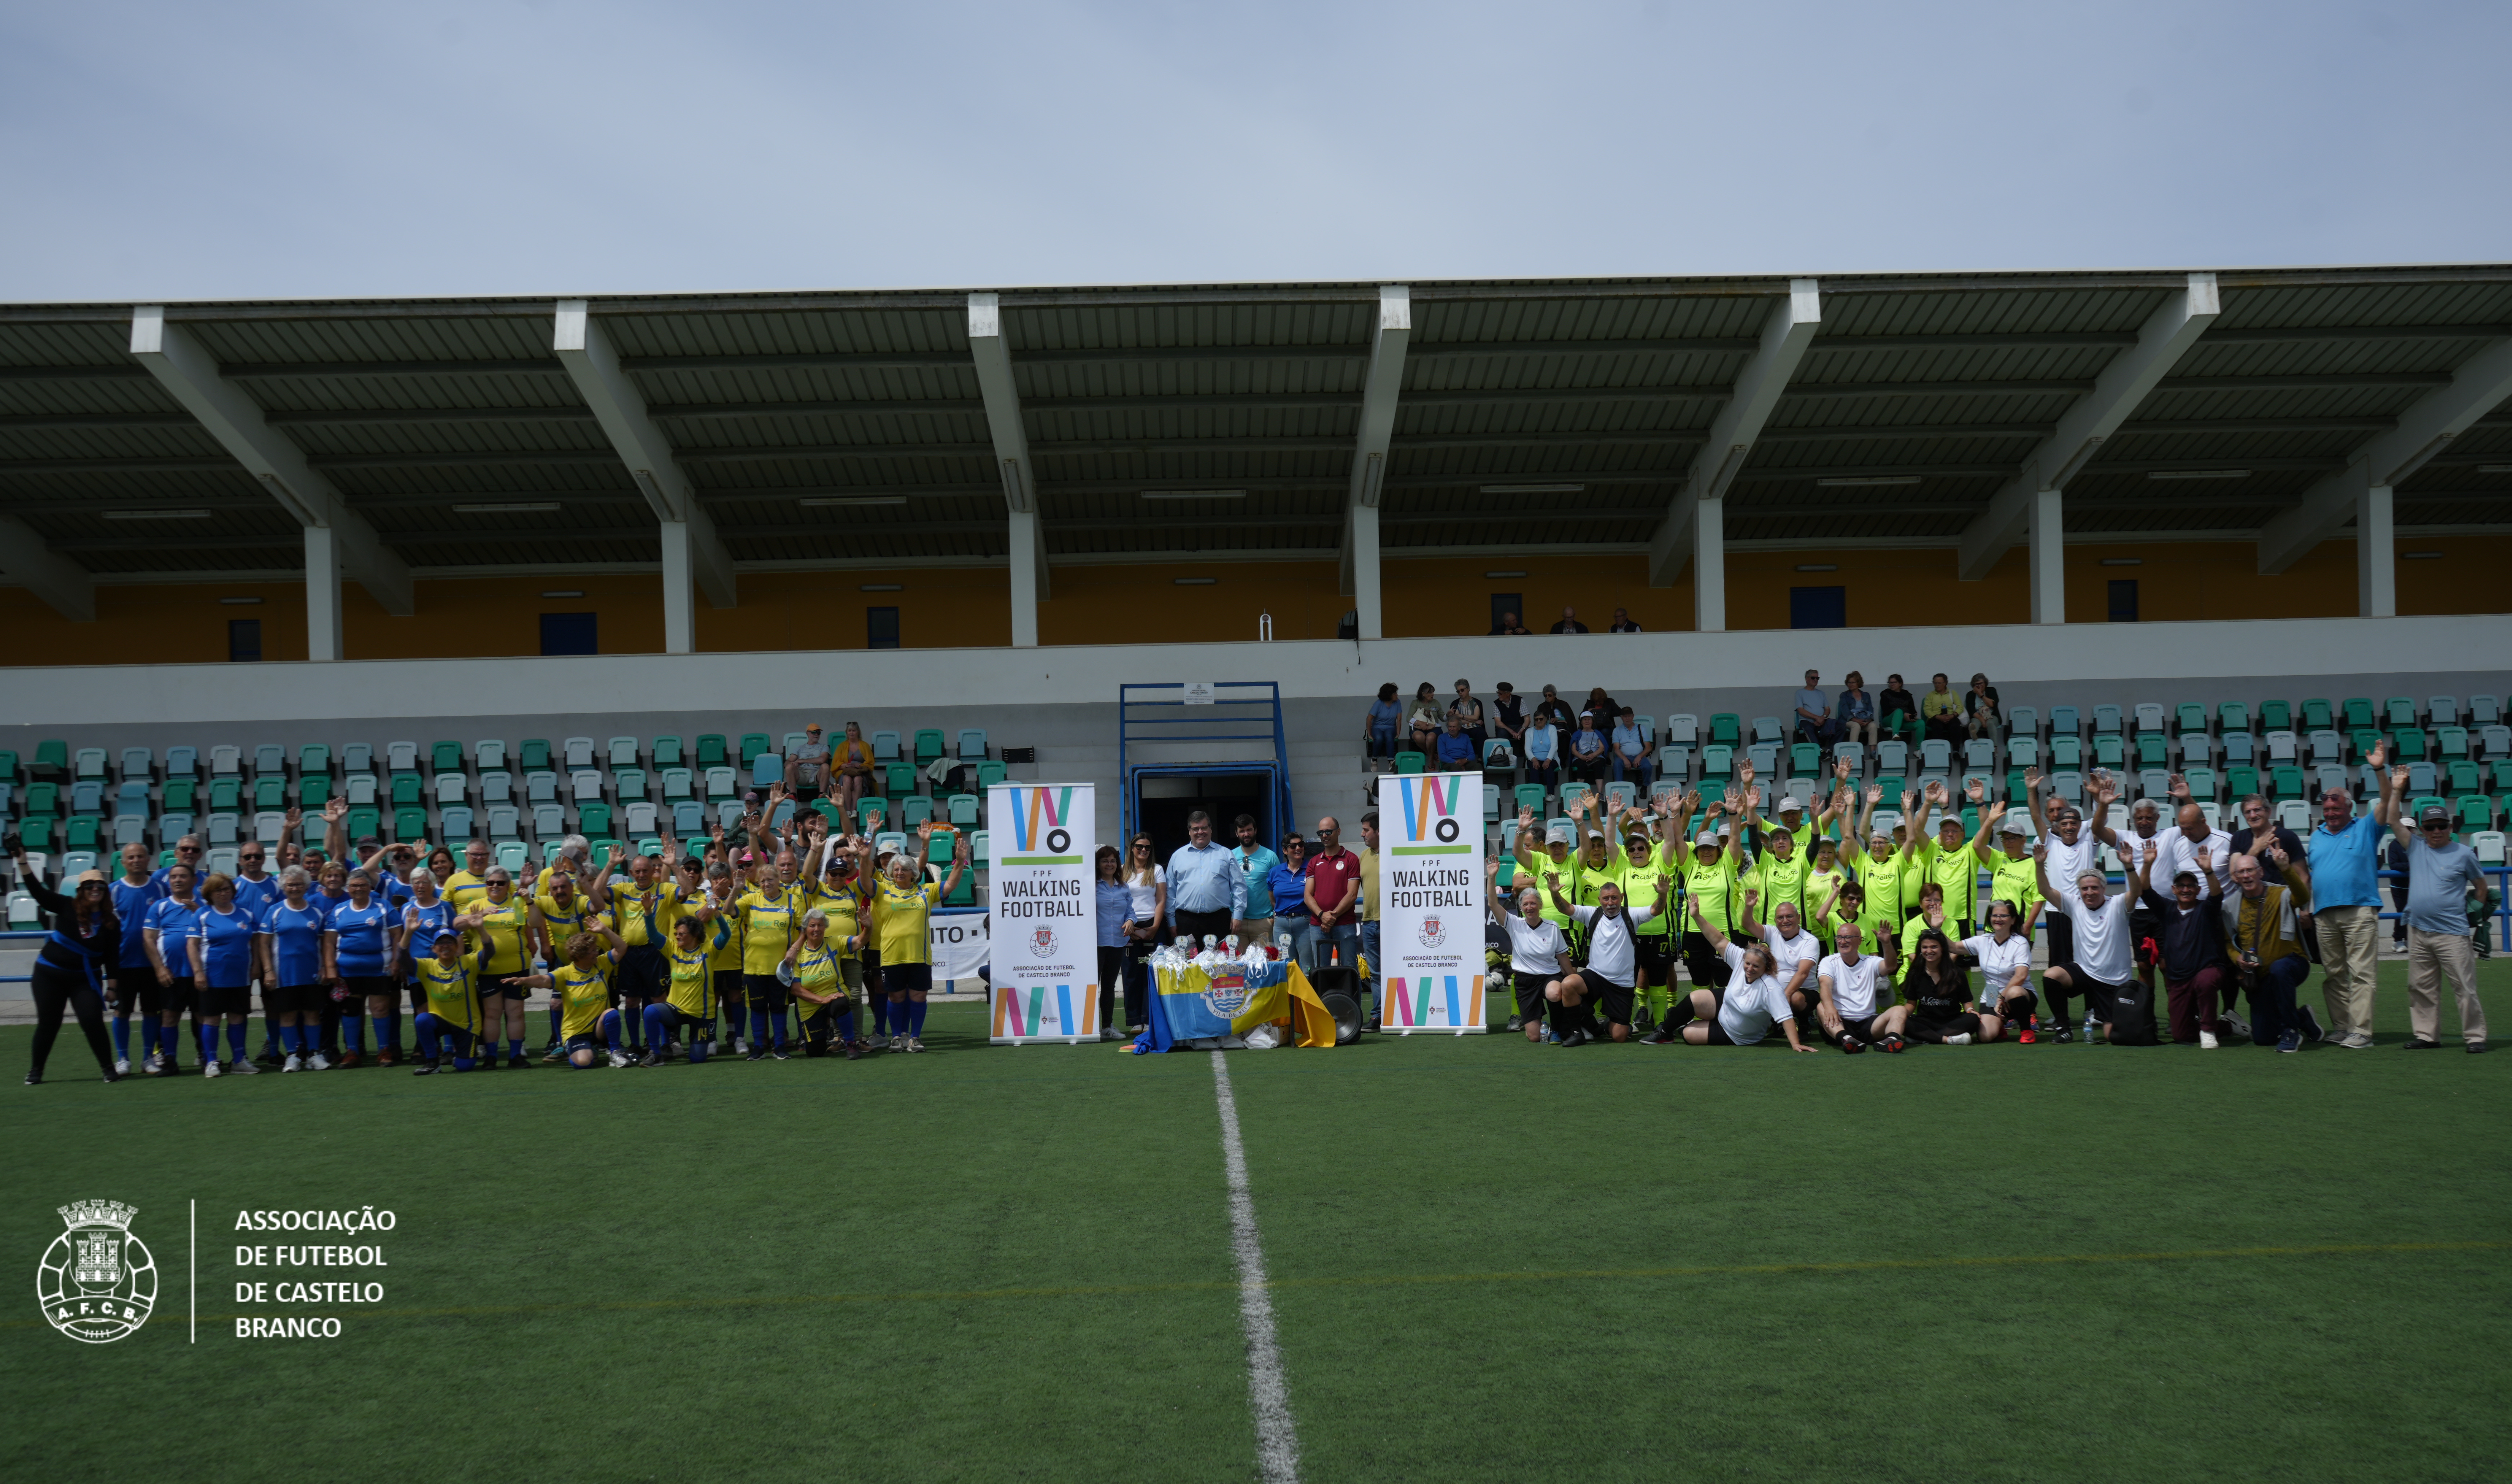 Convívio e boa disposição marcam 2º Encontro Regional de Walking Football em Vila de Rei